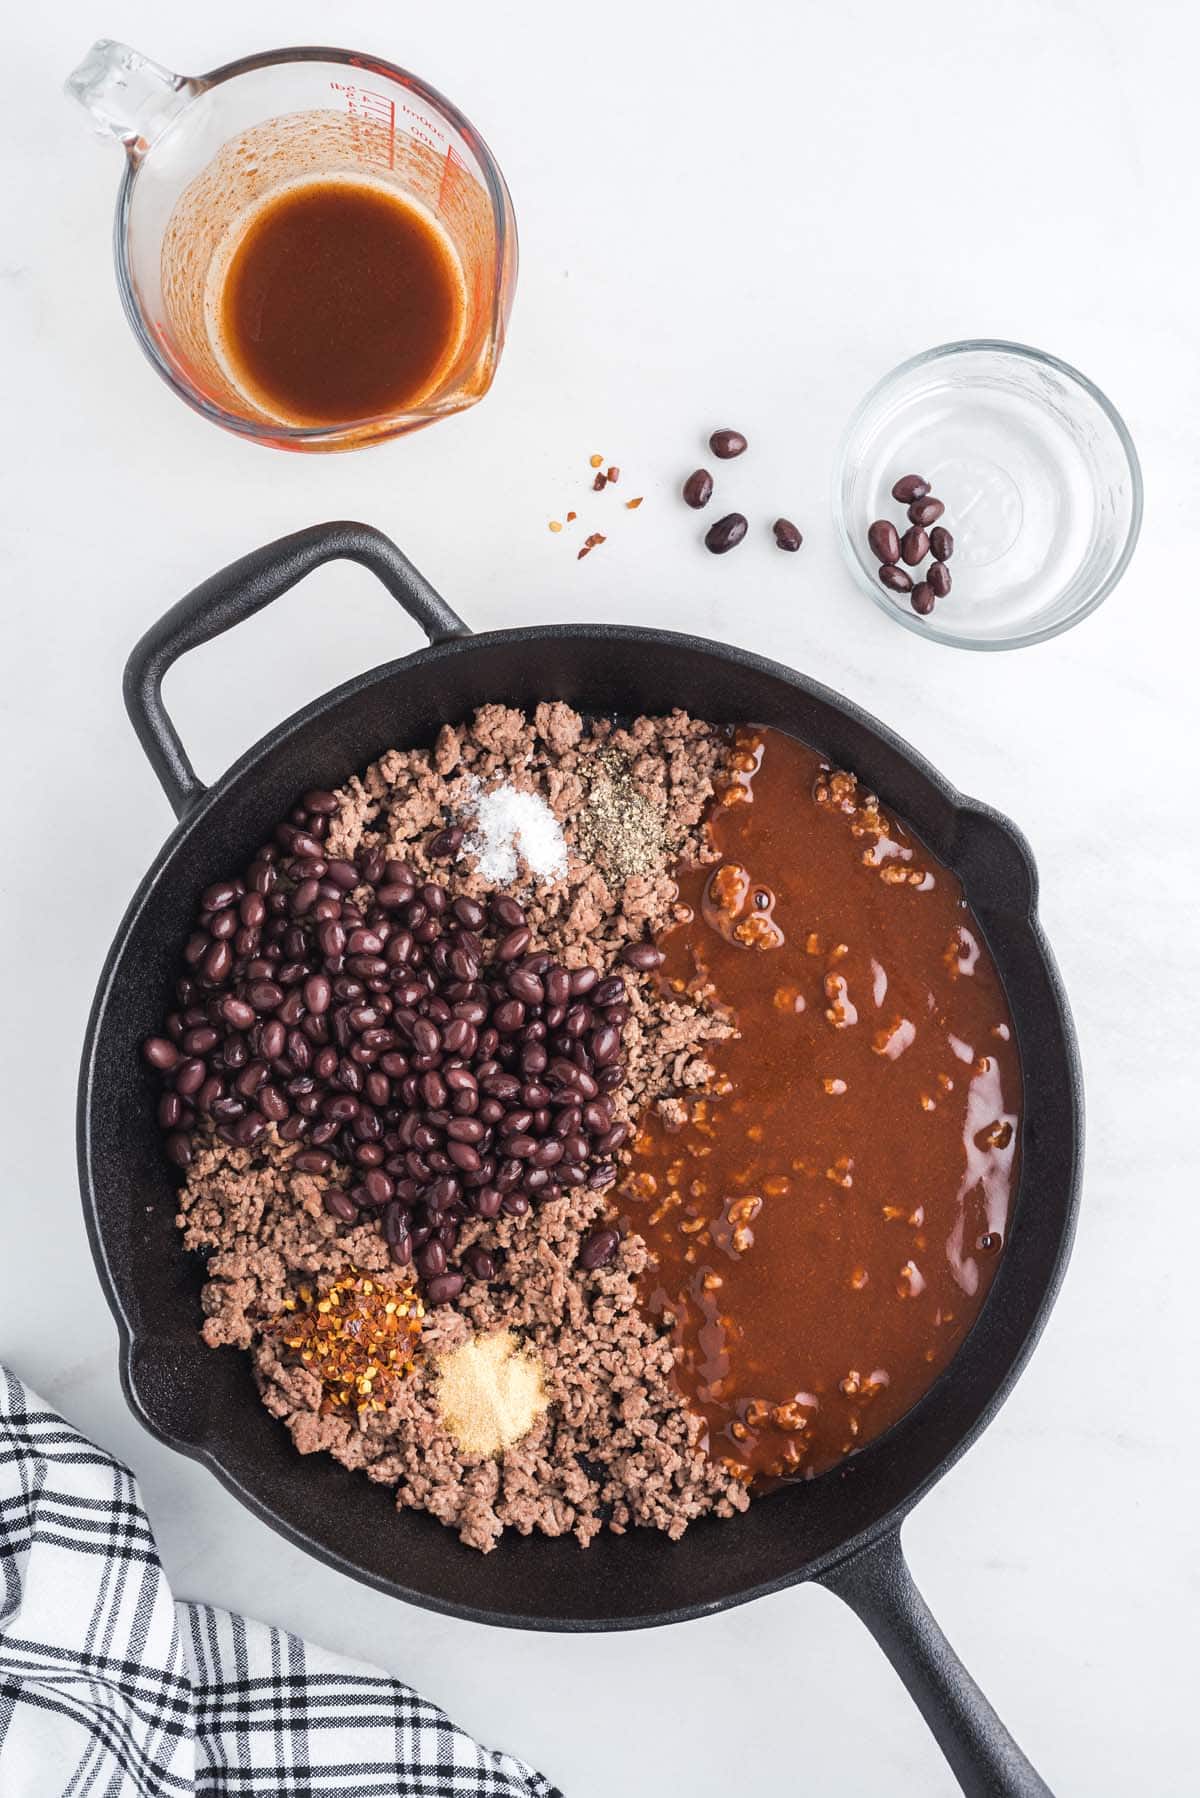 black beans, sauce, and seasonings in a pan